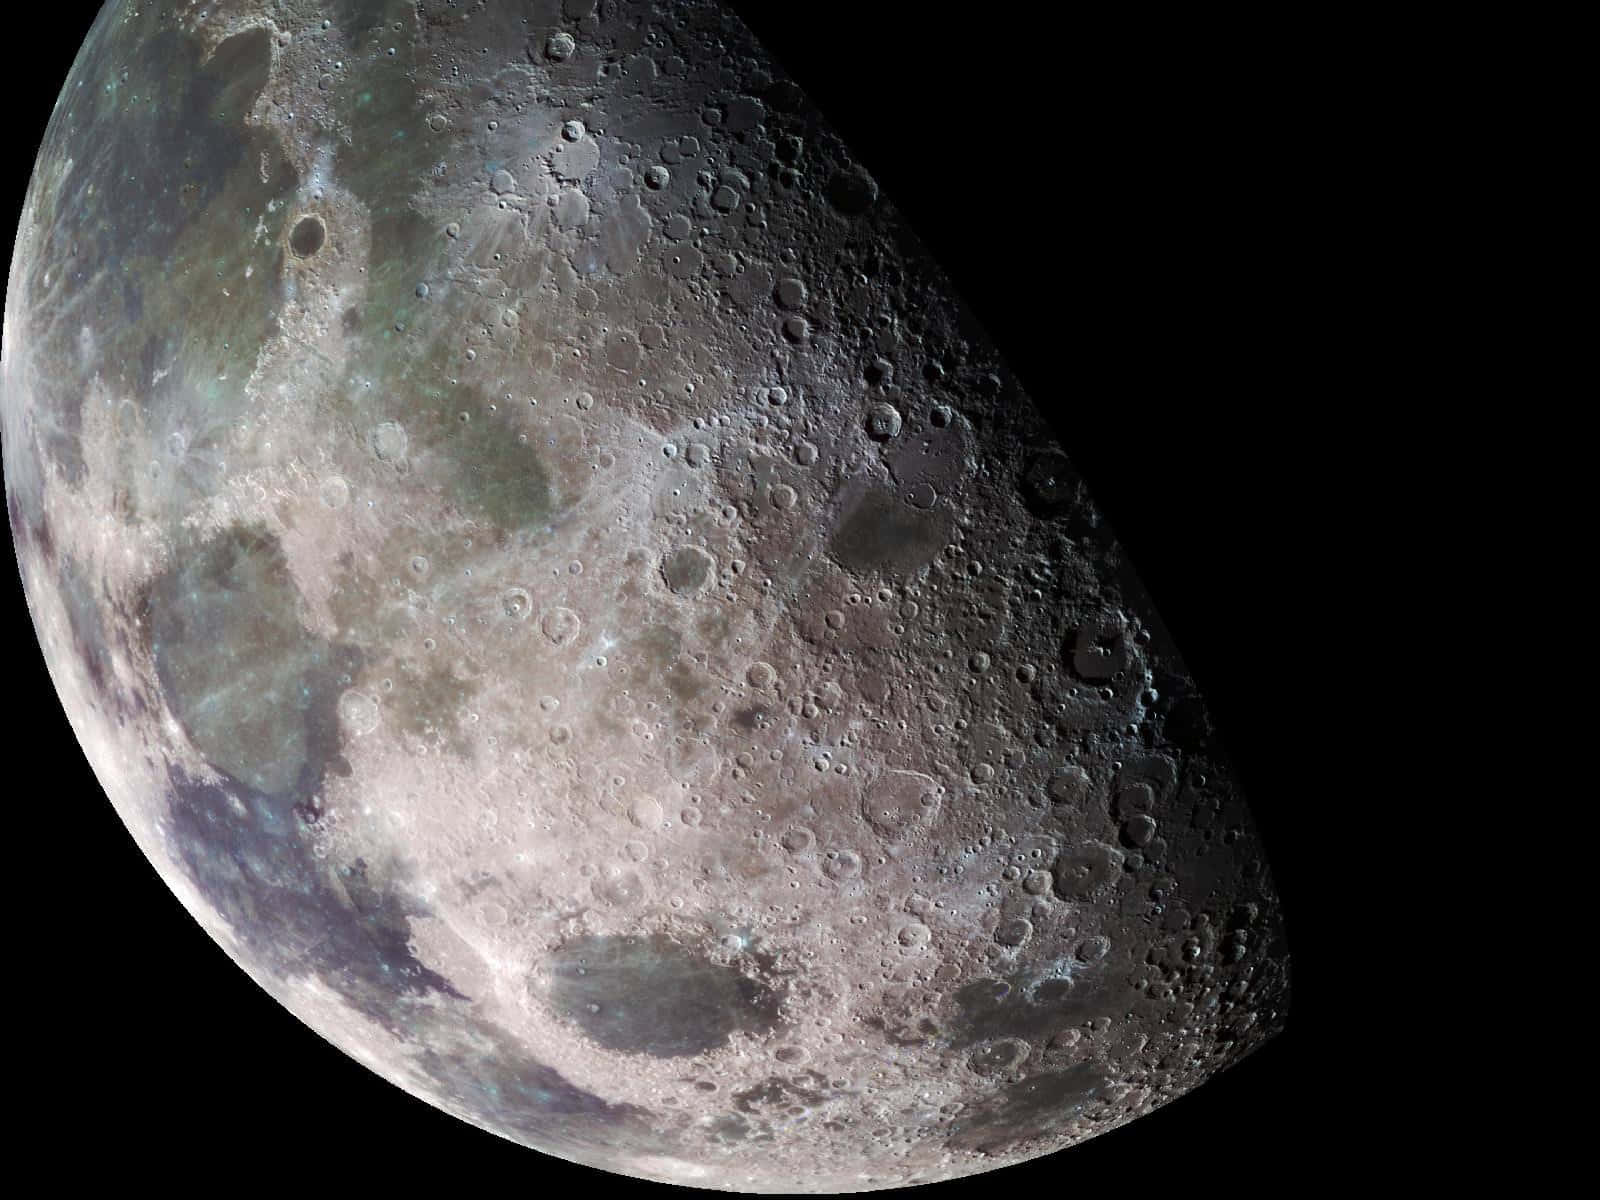 Imagende La Superficie Oscura Y Craterizada De La Luna